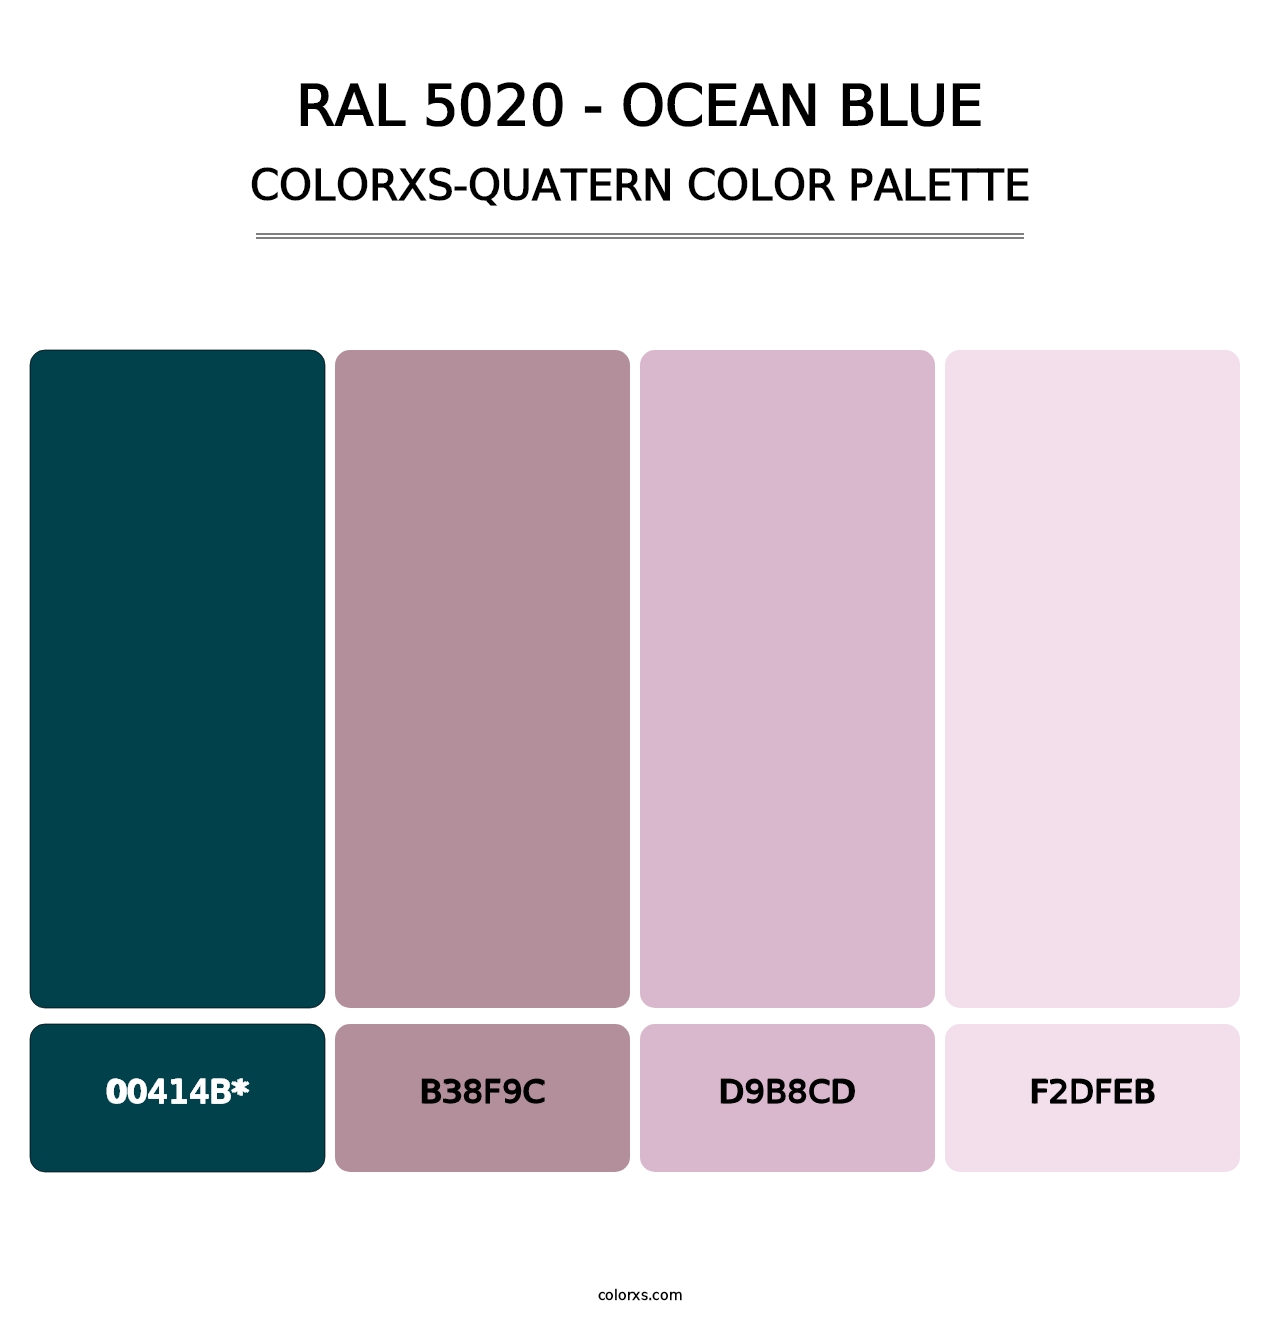 RAL 5020 - Ocean Blue - Colorxs Quad Palette